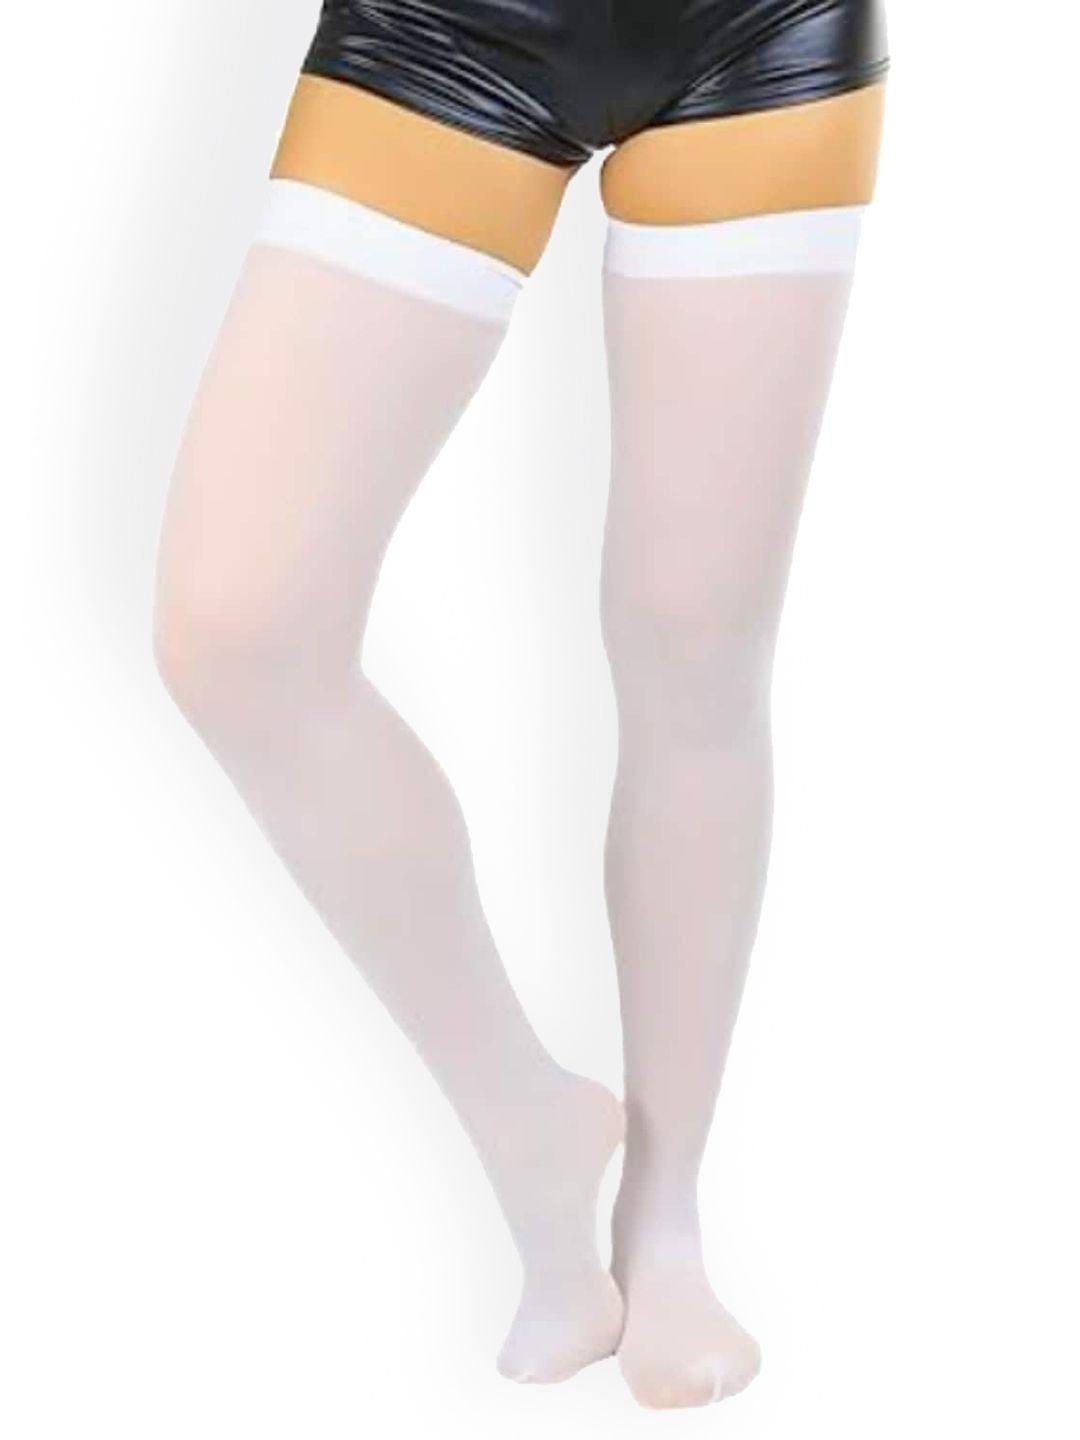 baesd women thigh-high sheered stockings